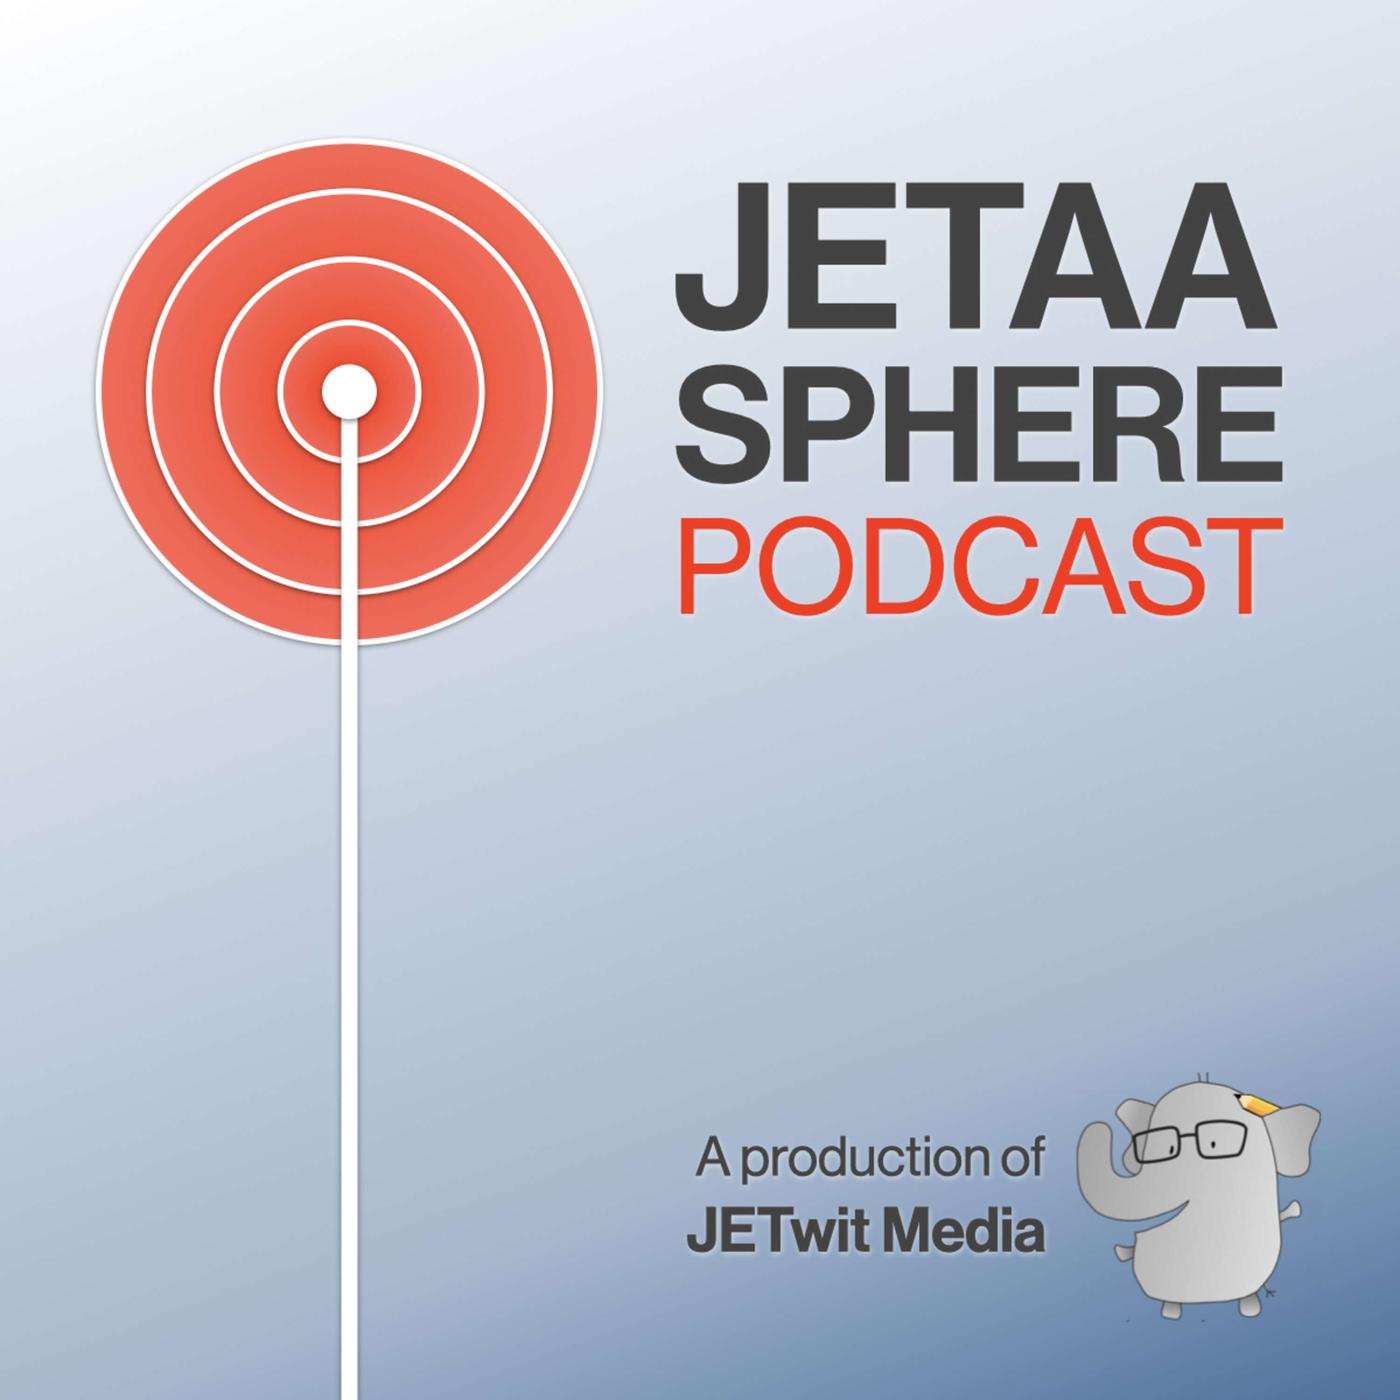 JETAA-sphere Podcast